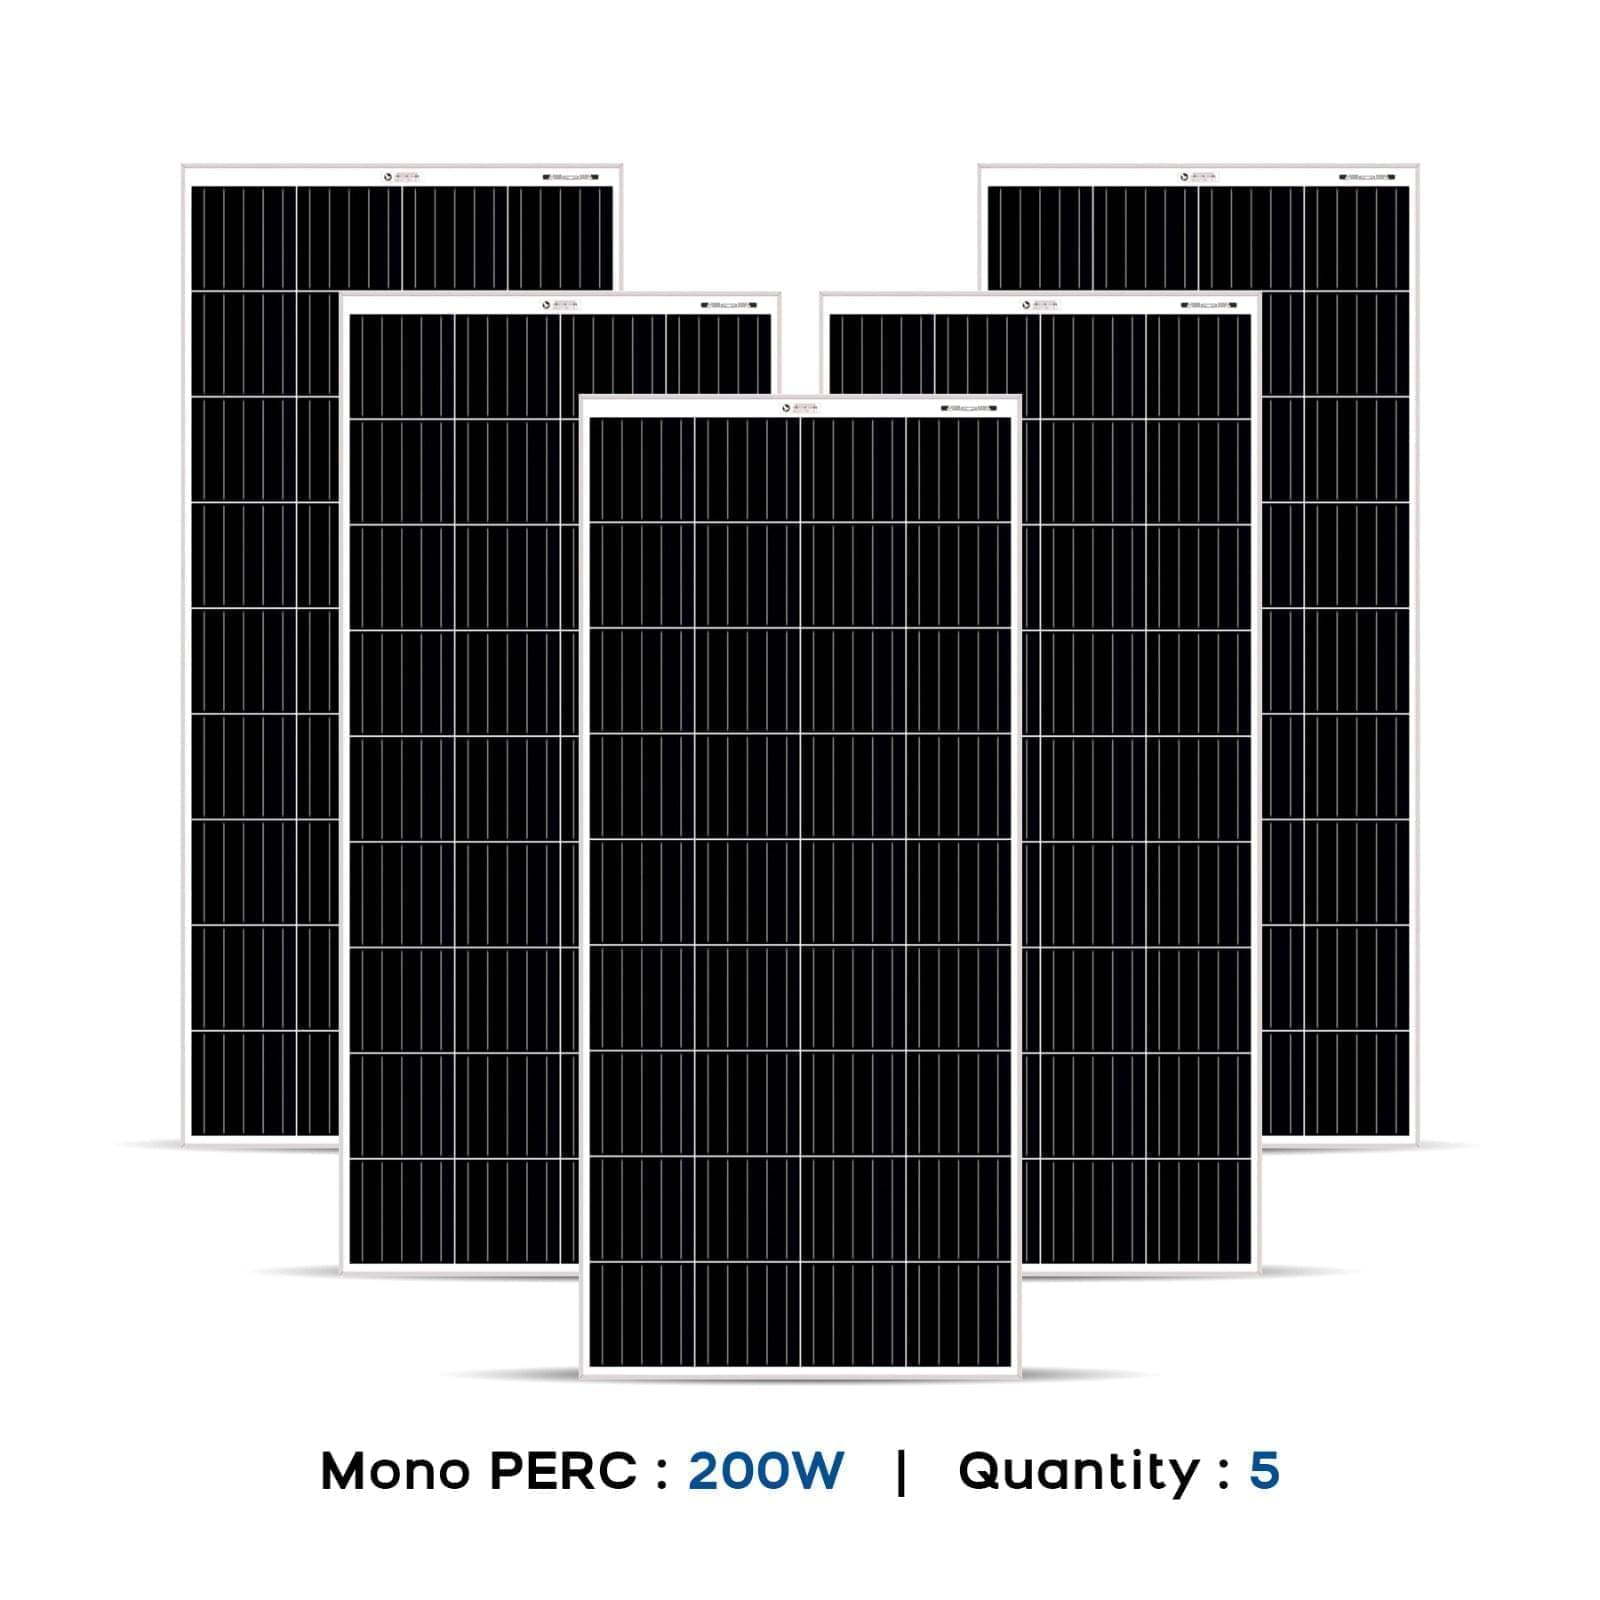 1 Kw solar panel